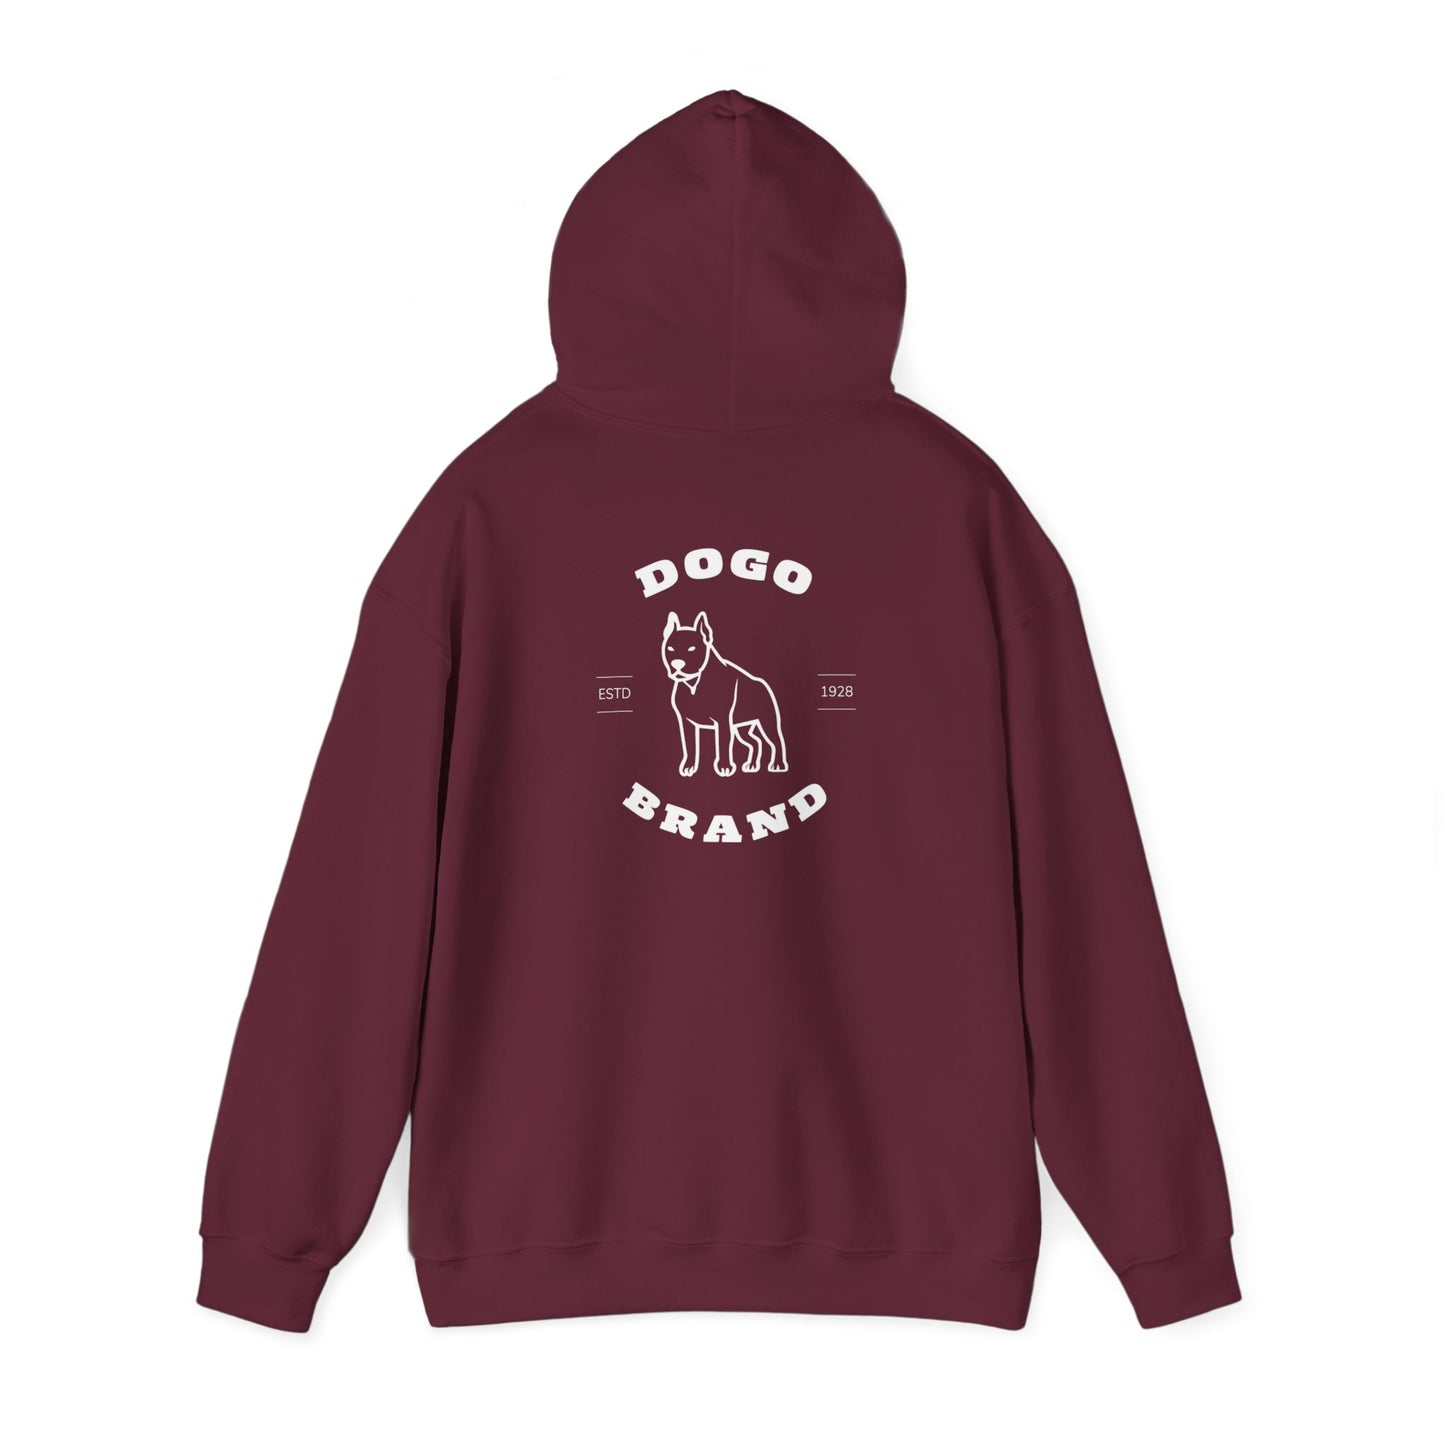 Dogo Brand Hooded Sweatshirt